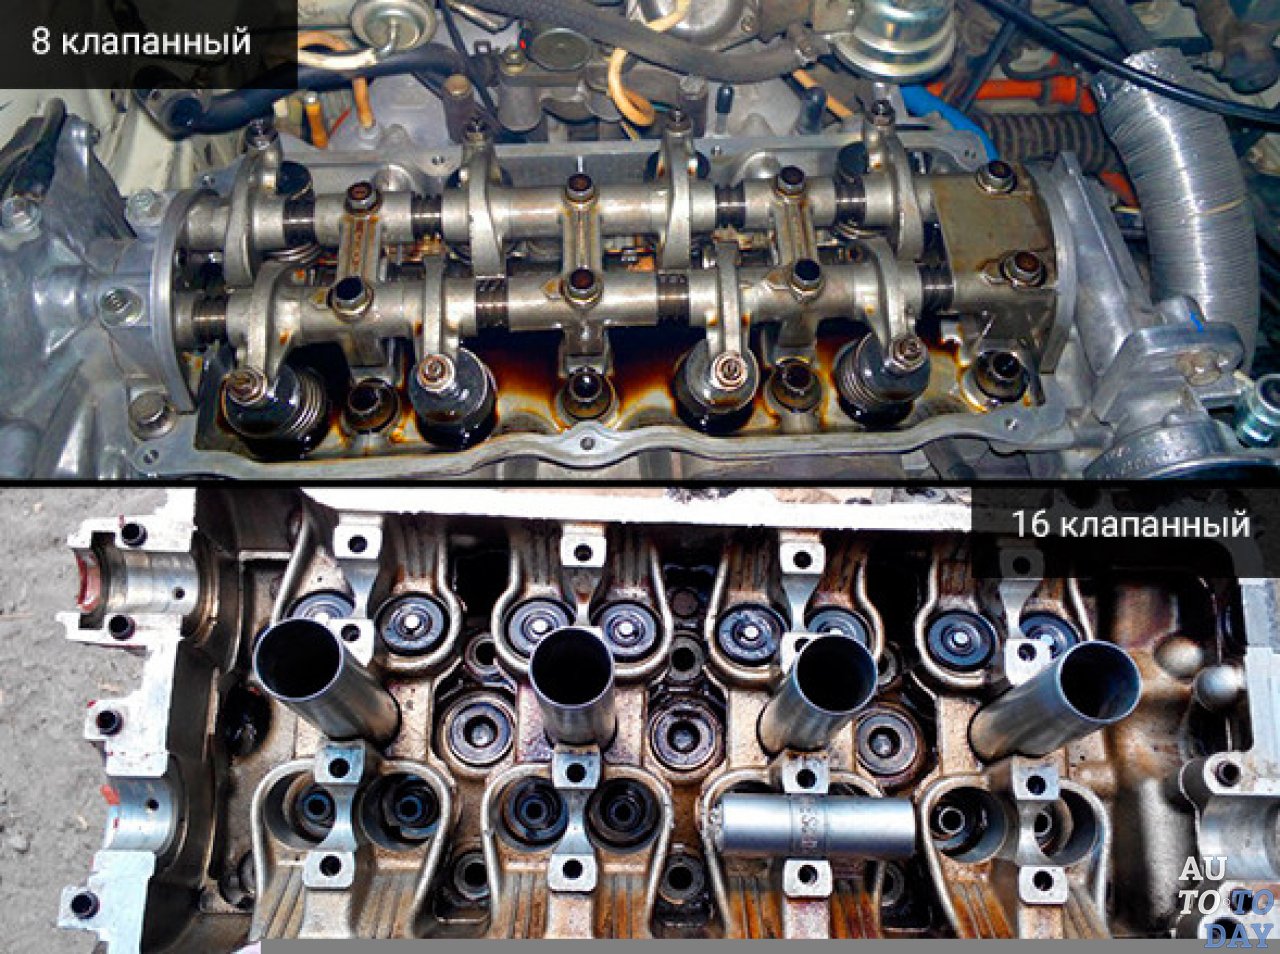 Шестнадцать клапанов. Двигатель от ВАЗ 8 И 16 клапанов. Двигатель 8 клапанов и 16 клапанов на ВАЗ. Отличие 8 и 16 клапанных двигателей ВАЗ. ВАЗ 8 И 16 клапанный.